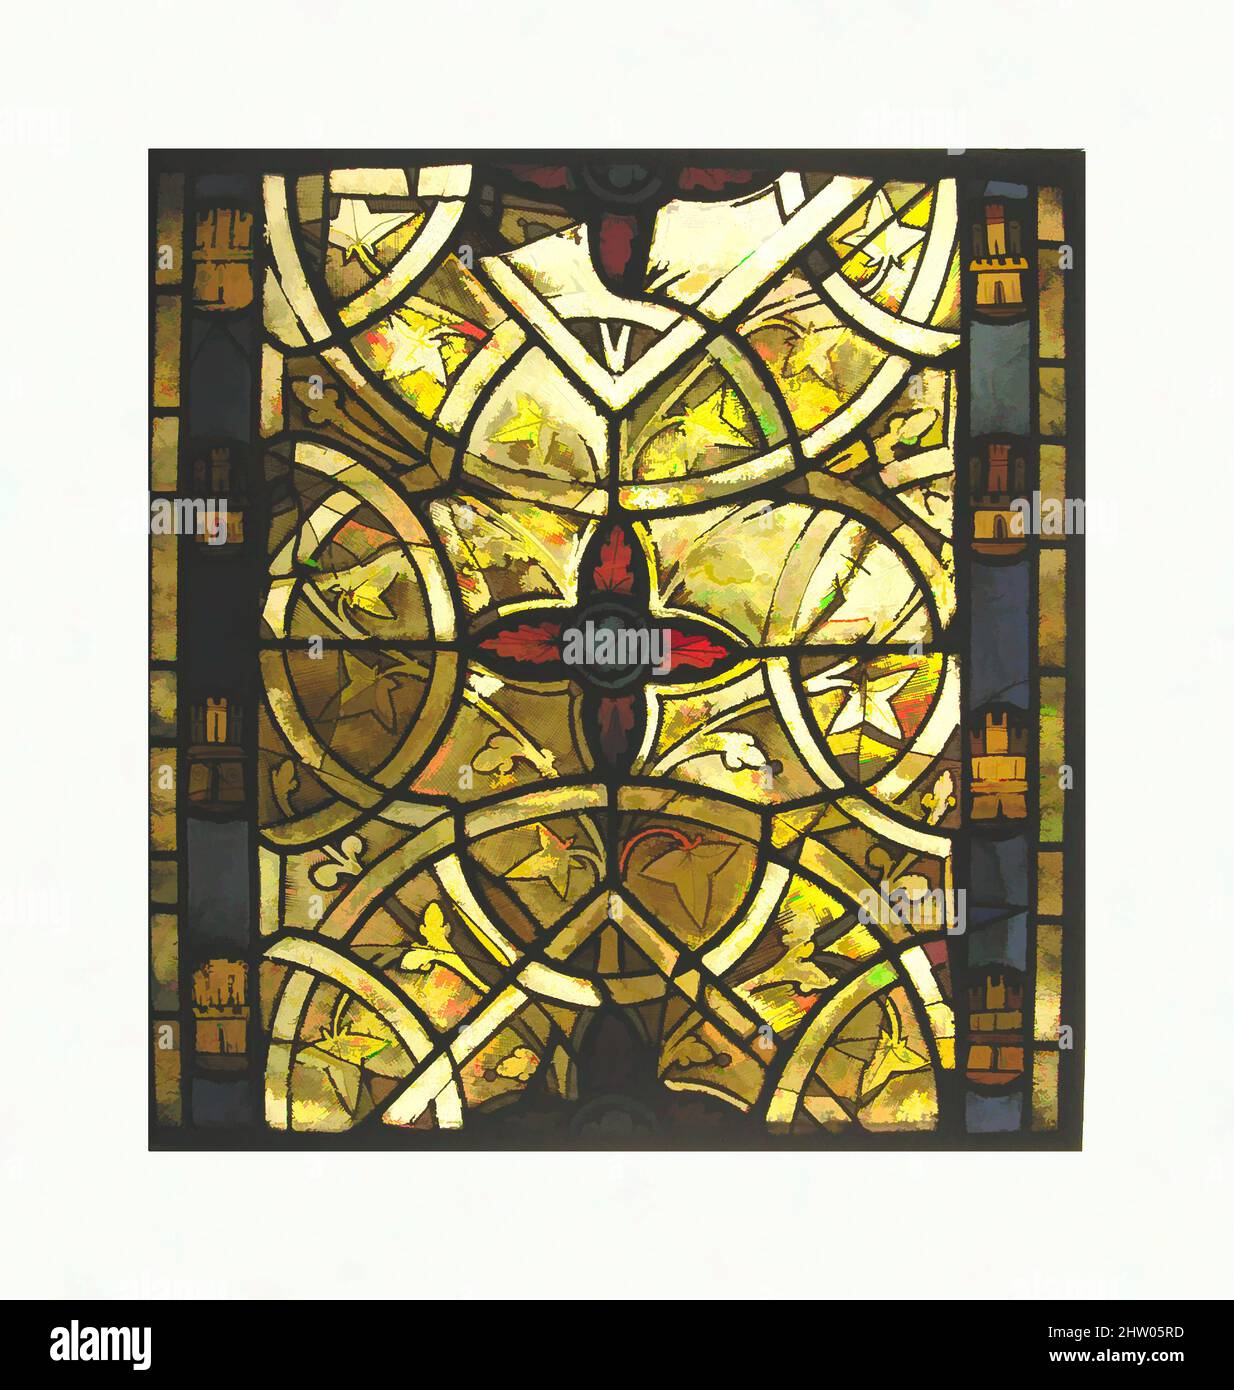 Arte ispirata a grisaille Panel, ca. 1265, fabbricato a Rouen, Normandia, Francia, francese, Vetro bianco, vetro pentolame e vernice vetrosa, totale: 23 1/4 x 20 1/2 poll. (59 x 52,1 cm), vetrate, questi pannelli di grisaille fanno parte di un set di otto da una finestra in una delle tre cappelle in, opere classiche modernizzate da Artotop con un tuffo di modernità. Forme, colore e valore, impatto visivo accattivante sulle emozioni artistiche attraverso la libertà delle opere d'arte in modo contemporaneo. Un messaggio senza tempo che persegue una nuova direzione selvaggiamente creativa. Artisti che si rivolgono al supporto digitale e creano l'NFT Artotop Foto Stock